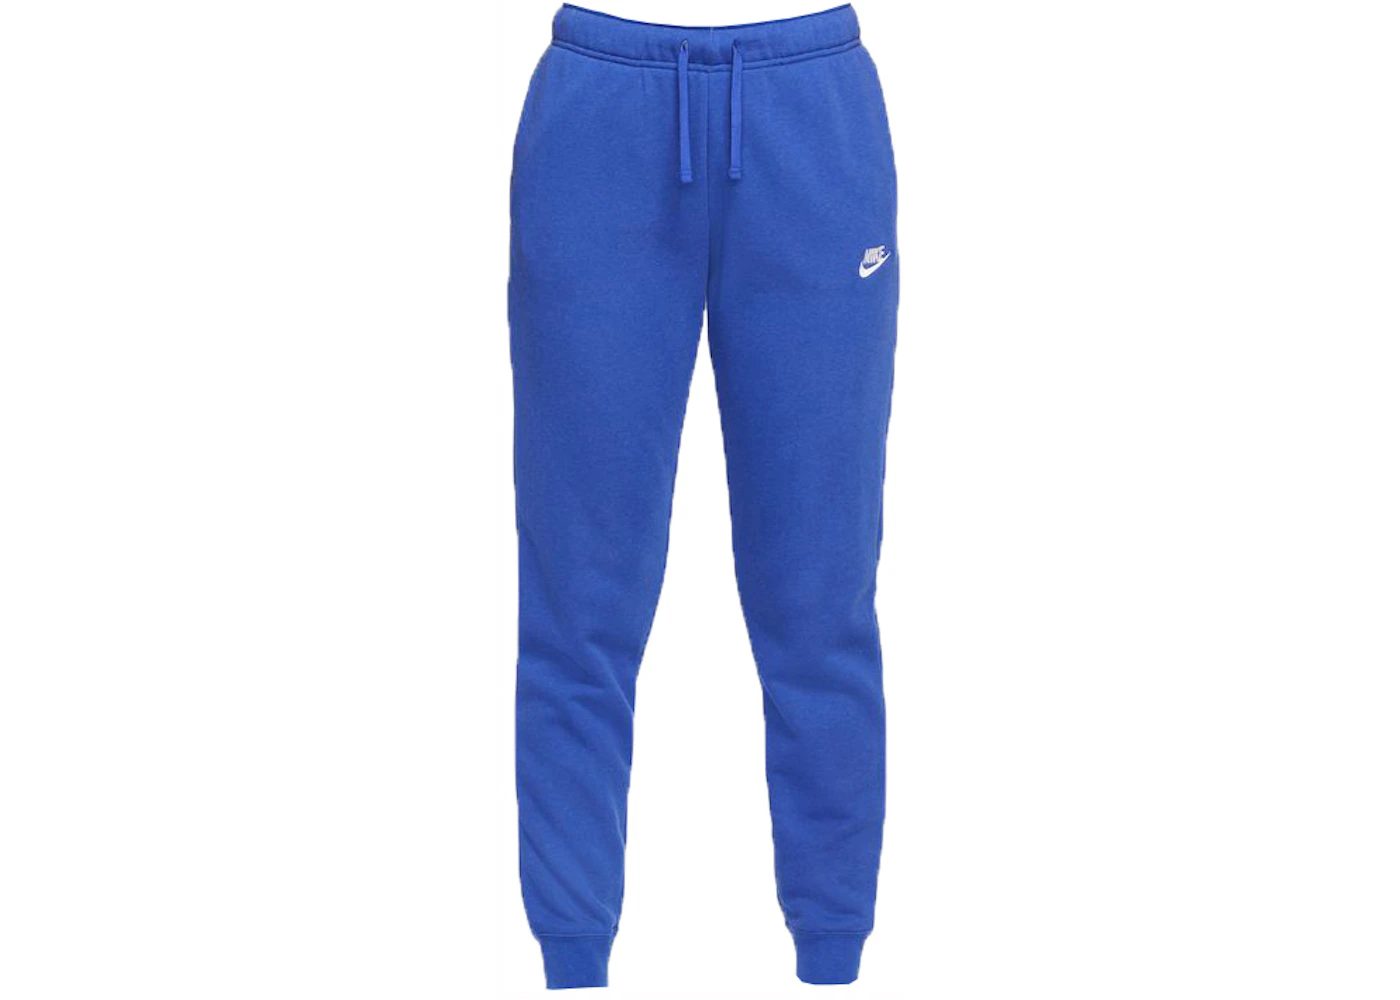 Nike Sportswear Women's Club Fleece Jogger Pants Hyper Royal/Htr